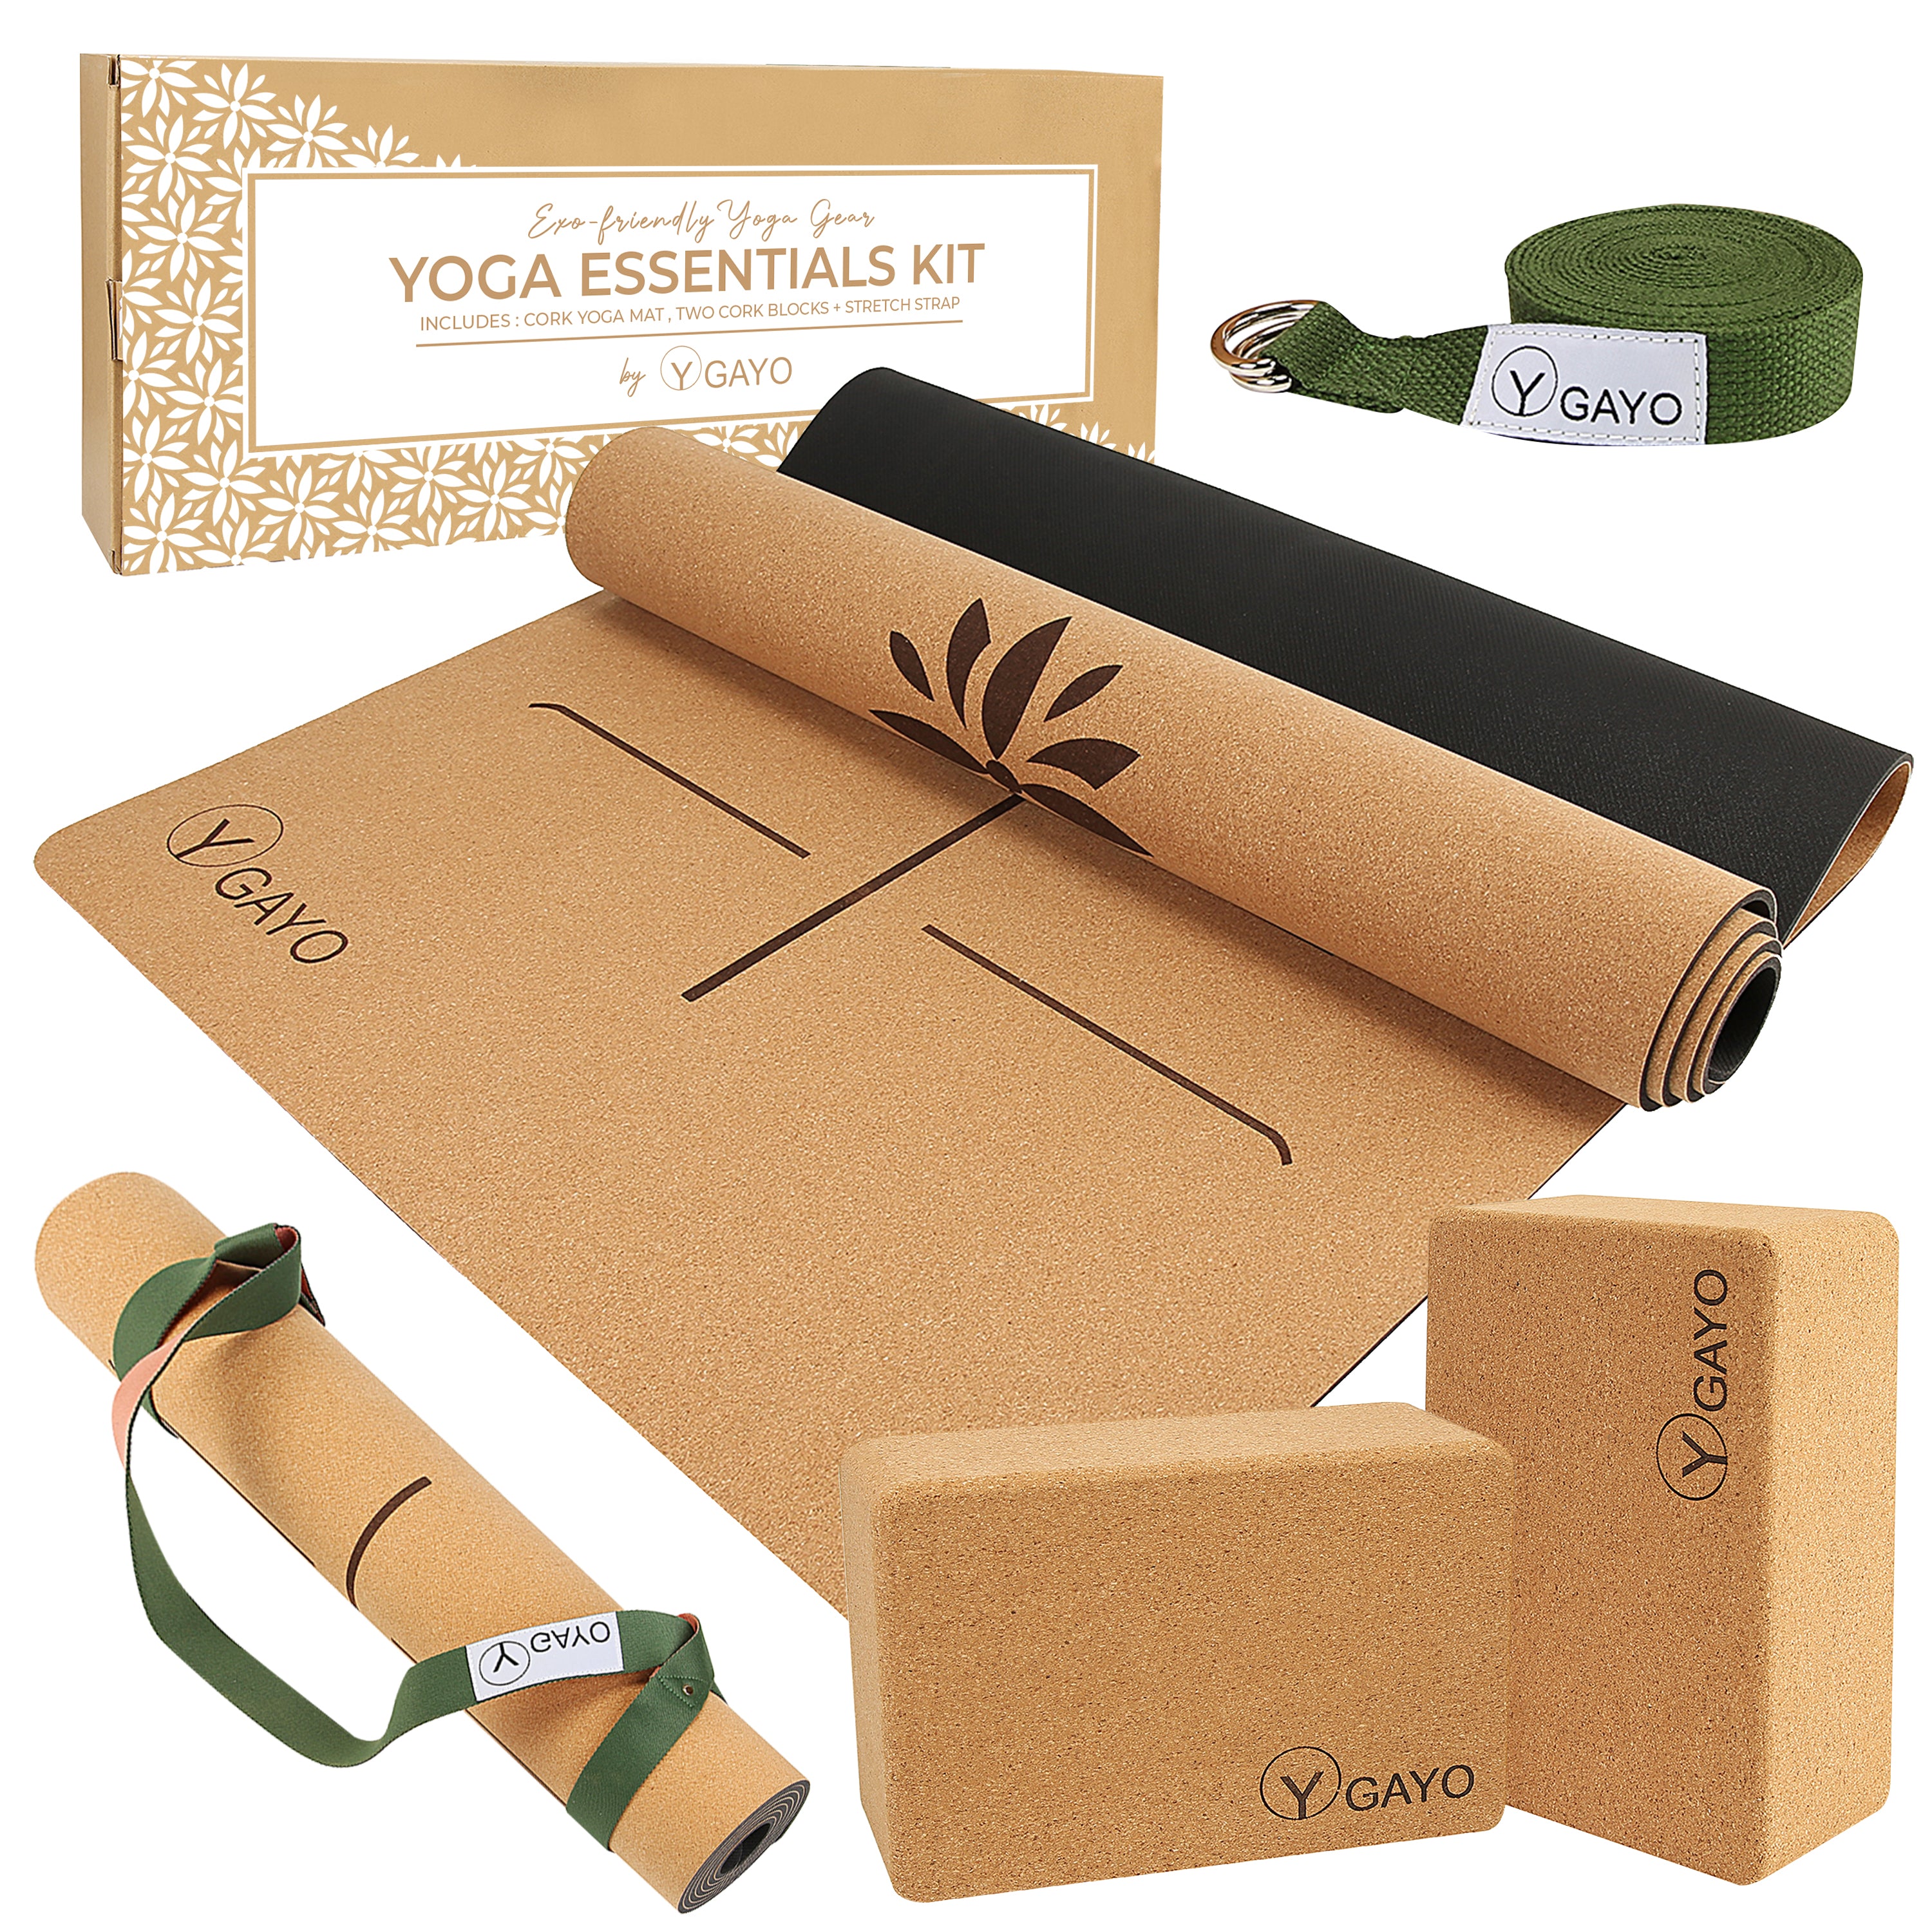 Yoga Essentials incl Cork Mat, Blocks, Eye Pillow, Strap